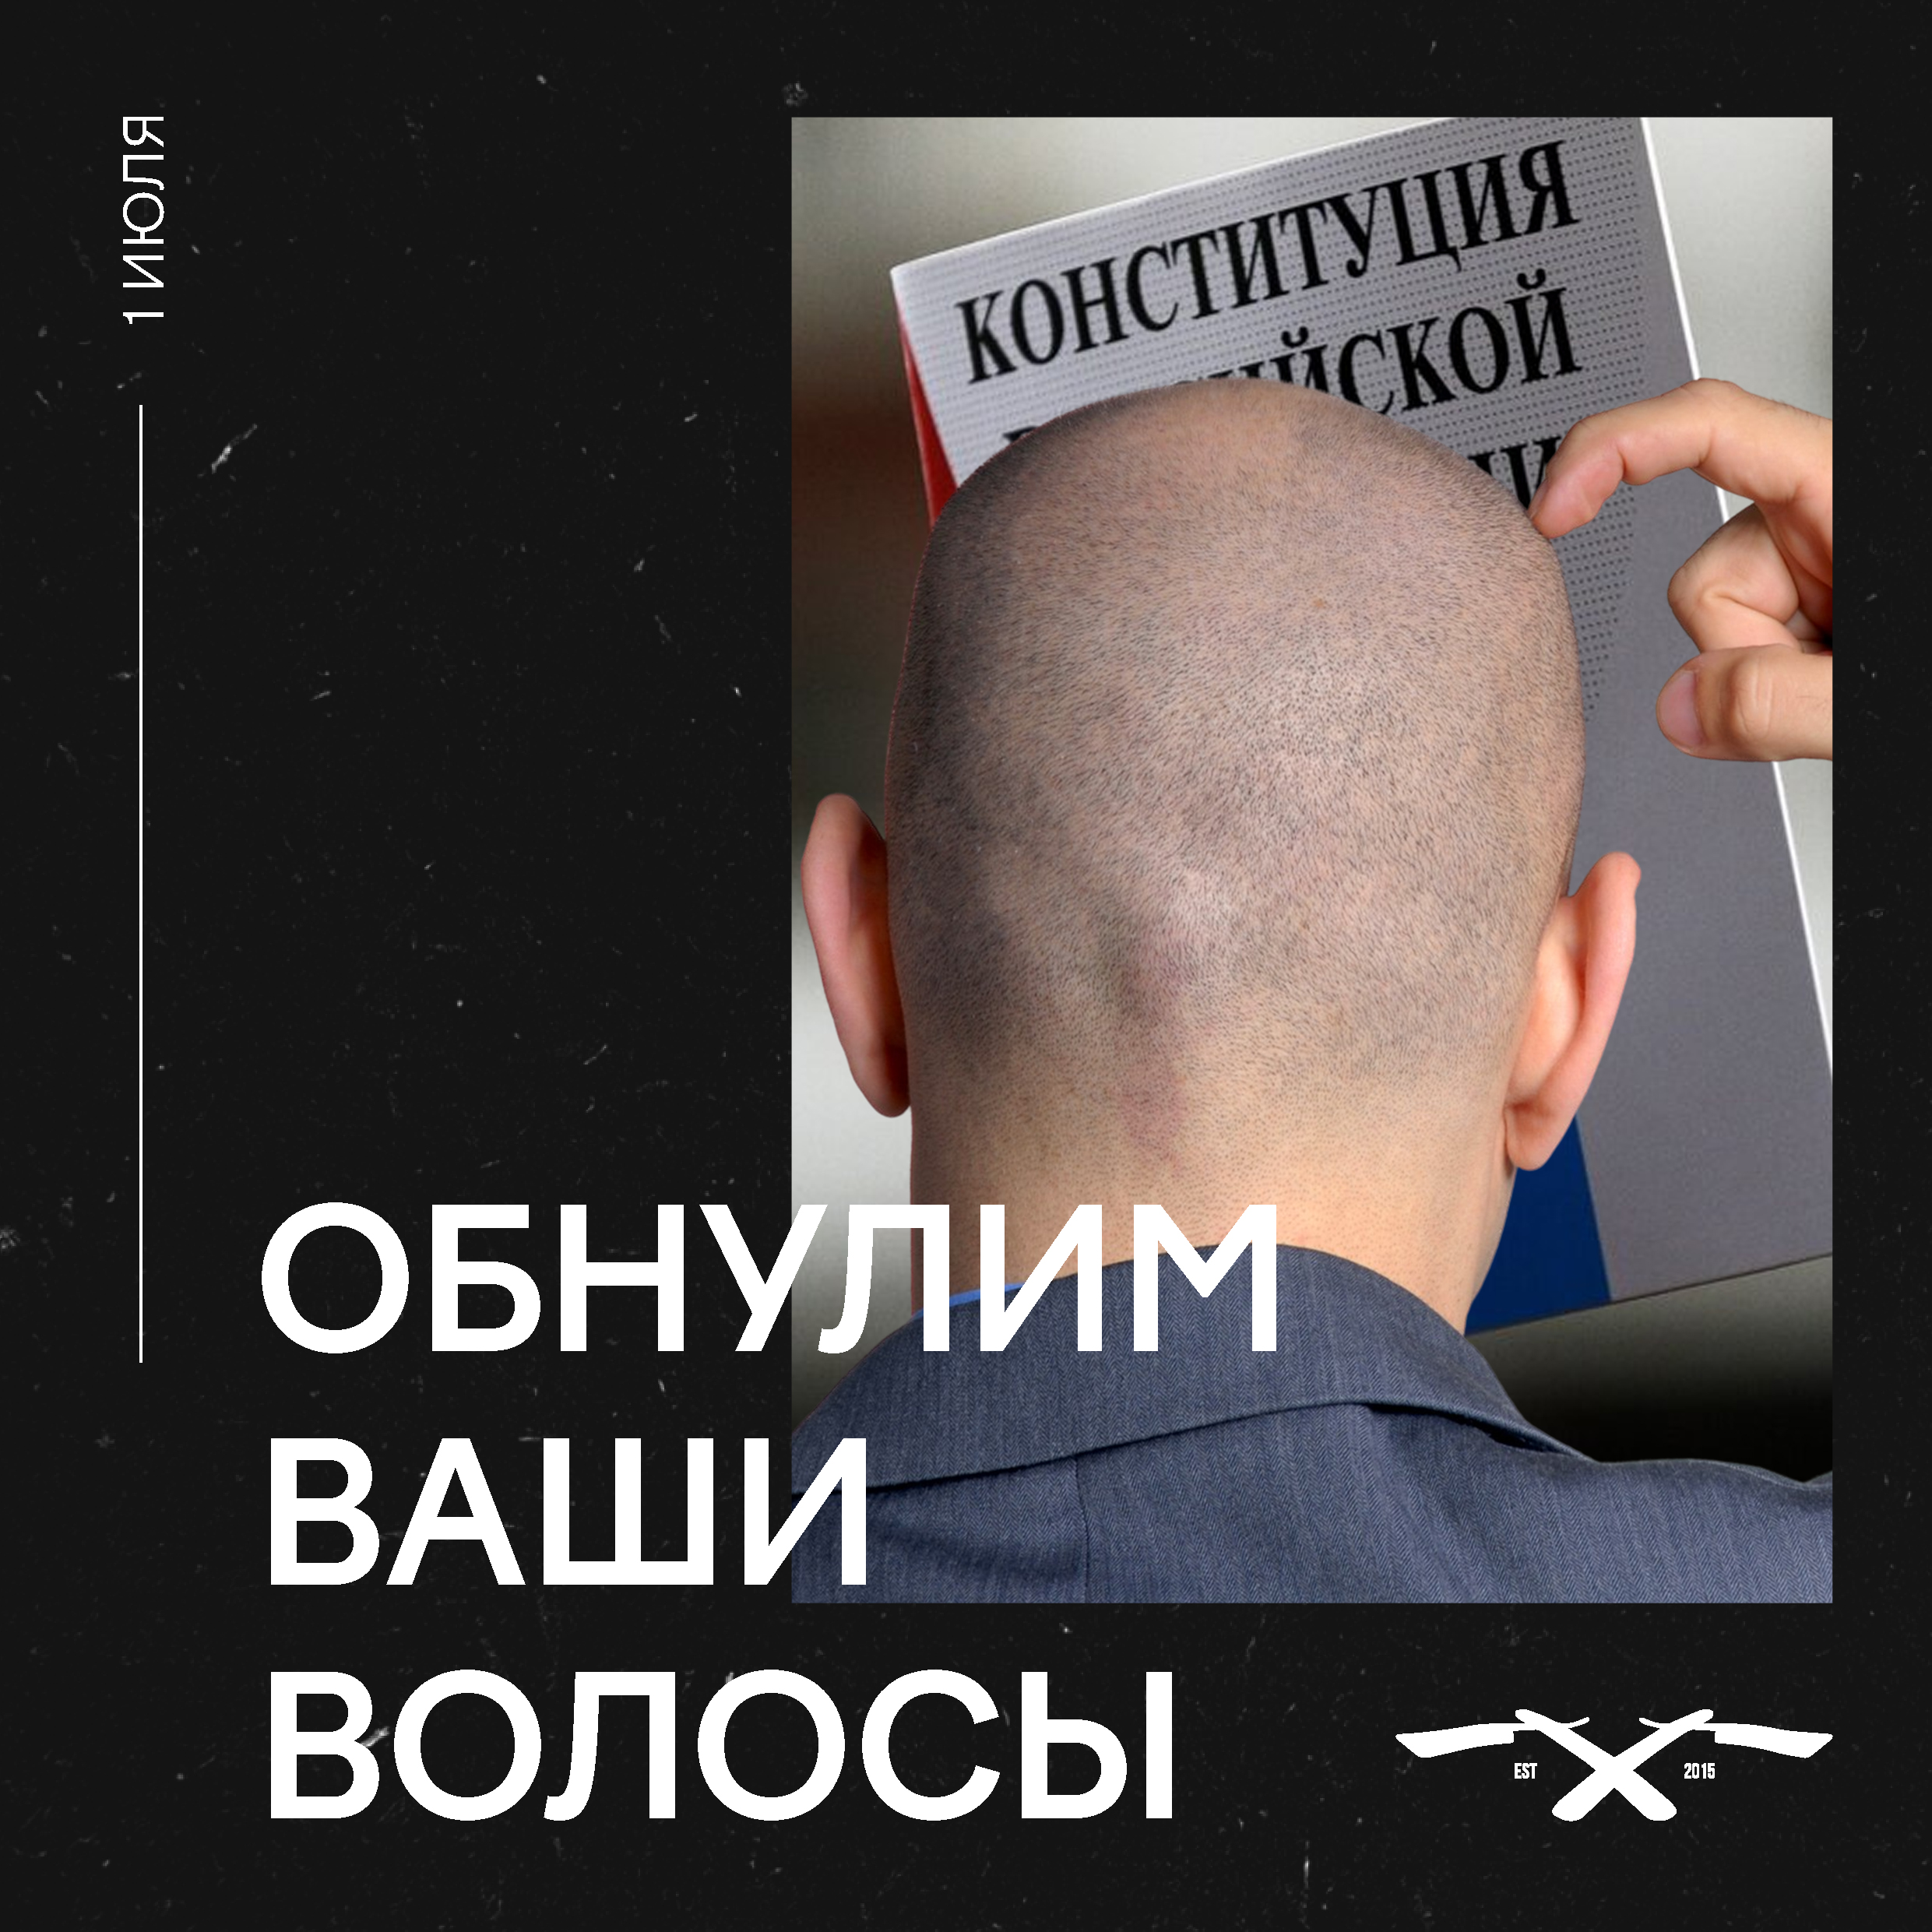 фото: 1 июля россиянам бесплатно «обнулят» волосы